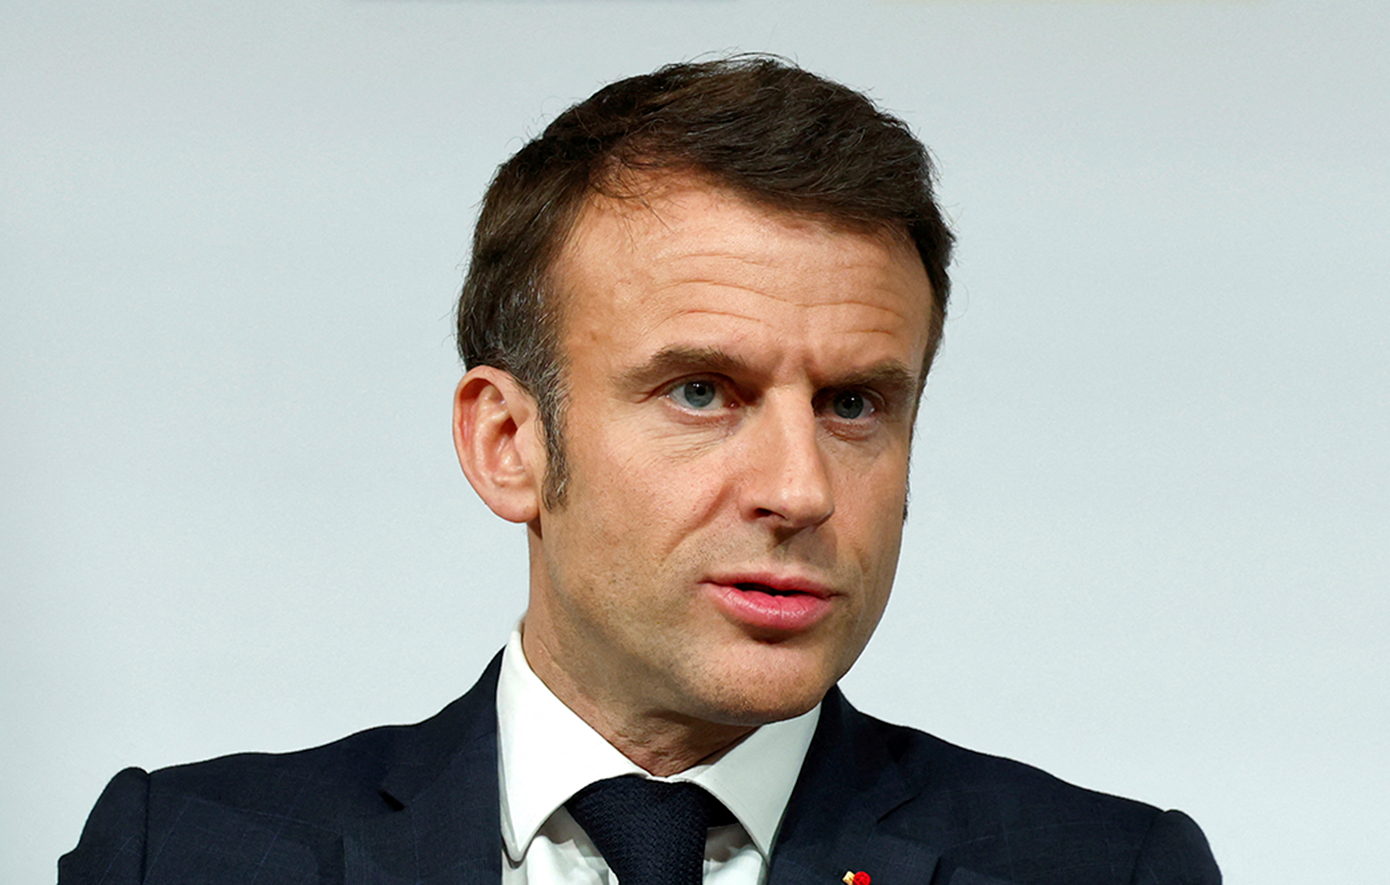 Ο Μακρόν ανακοίνωσε τη διάλυση του γαλλικού Κοινοβουλίου – «Είμαστε έτοιμοι να κυβερνήσουμε» λέει η Λεπέν